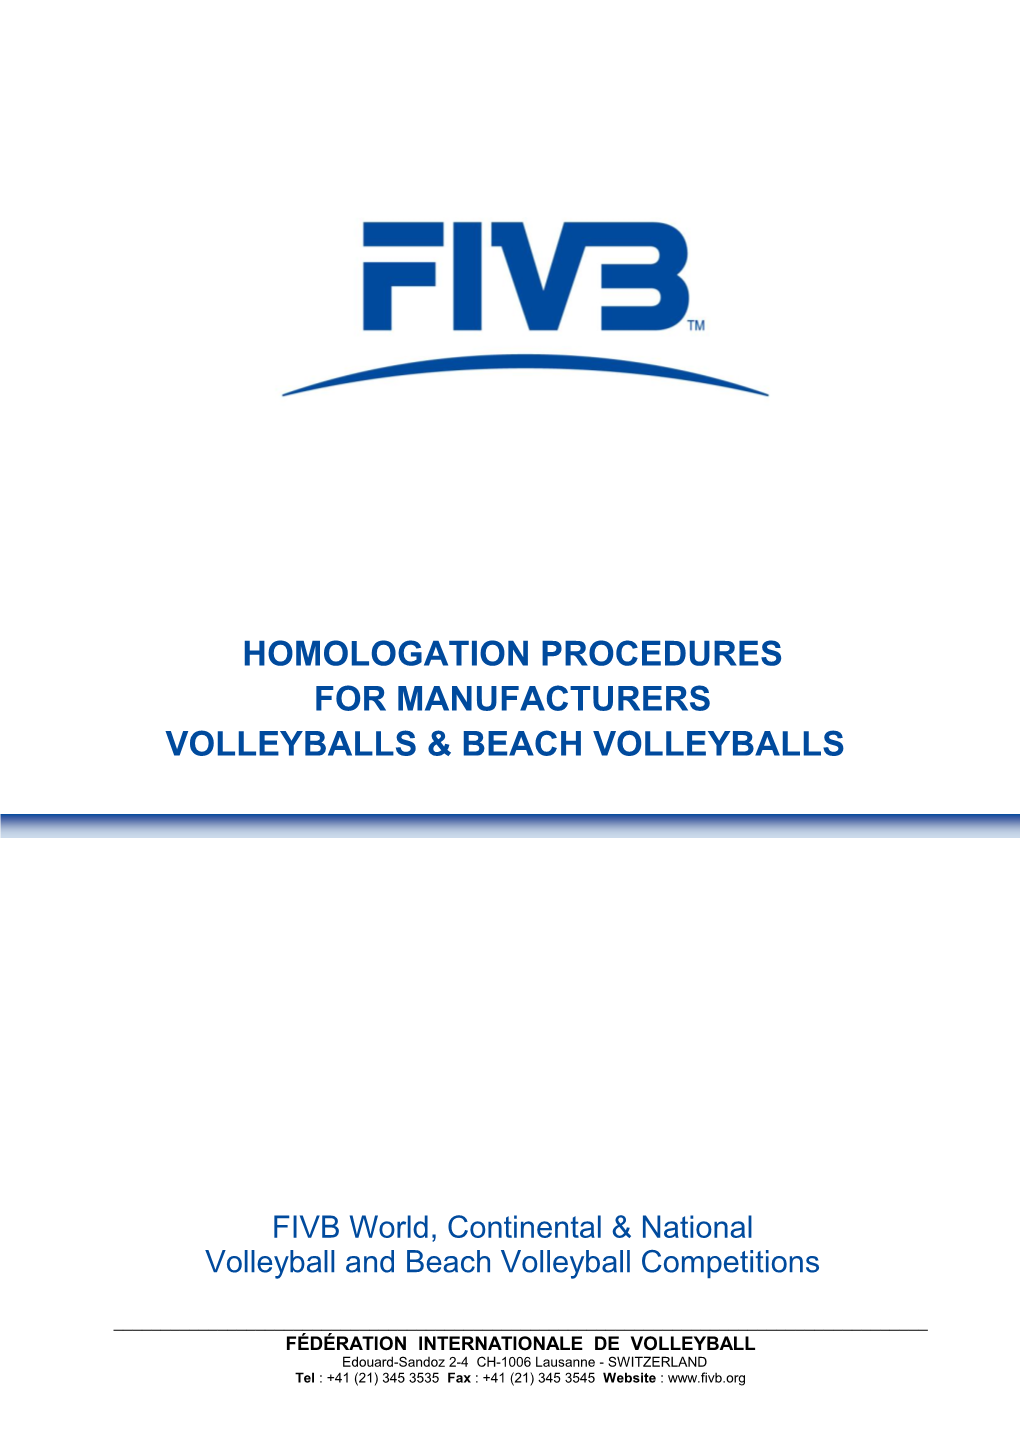 Homologation Procedures for Manufacturers Volleyballs & Beach Volleyballs